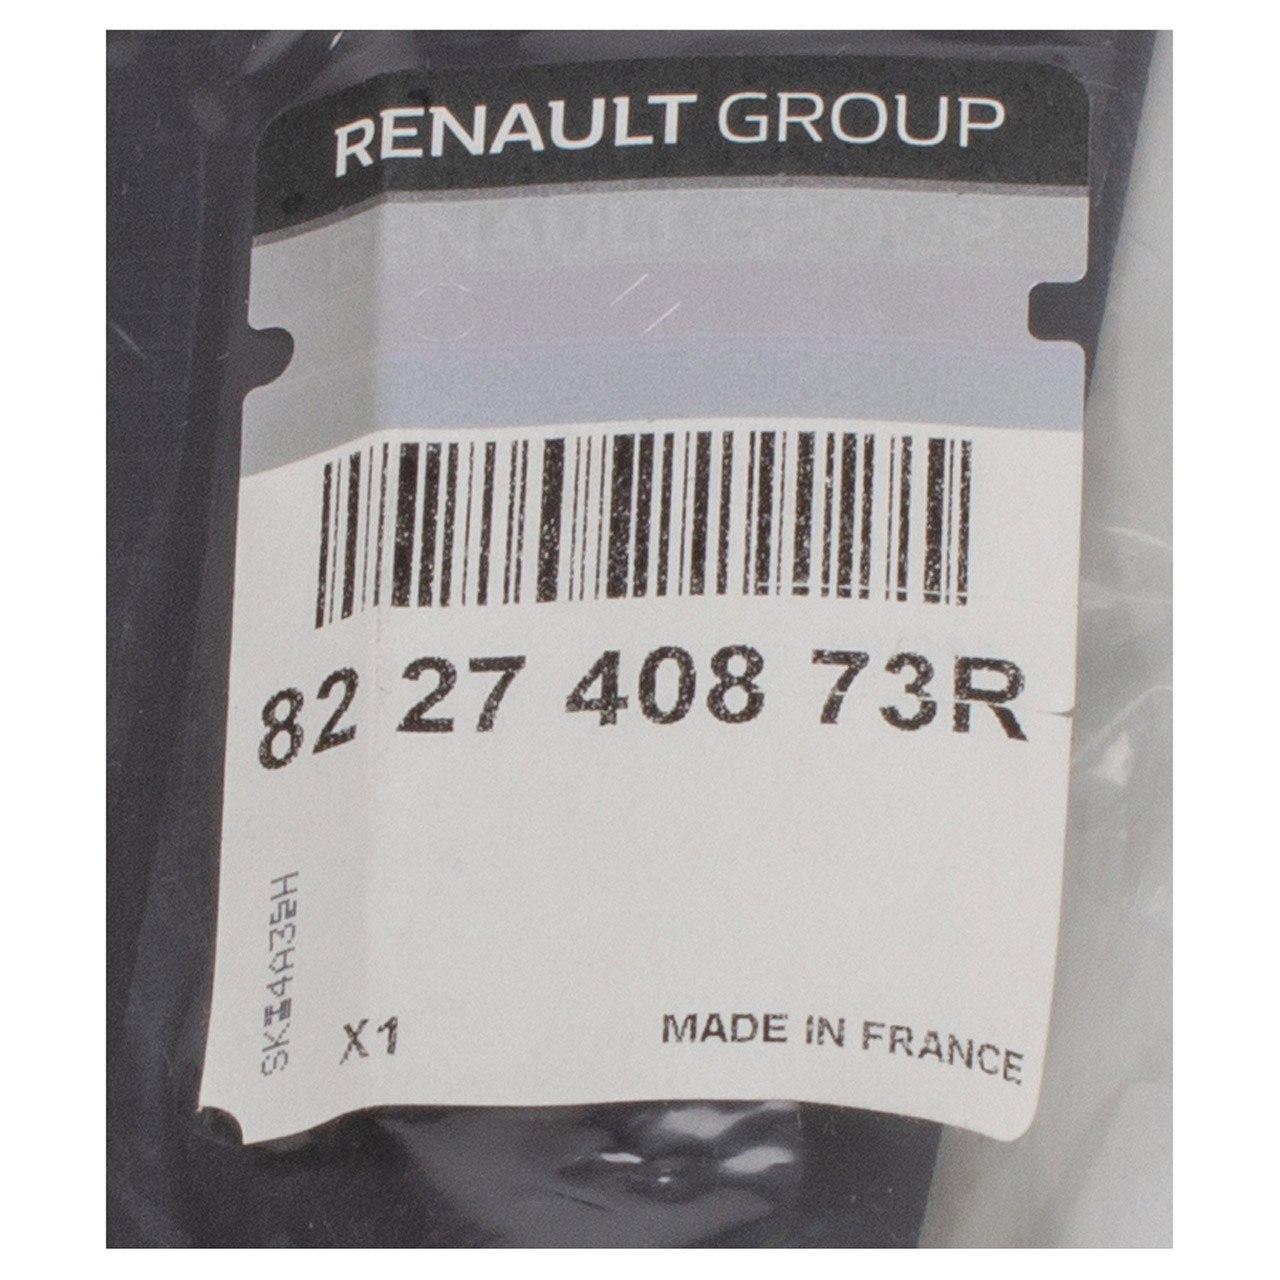 ORIGINAL Renault Zierleiste Türverkleidung Grand Scenic 3 hinten rechts 822740873R